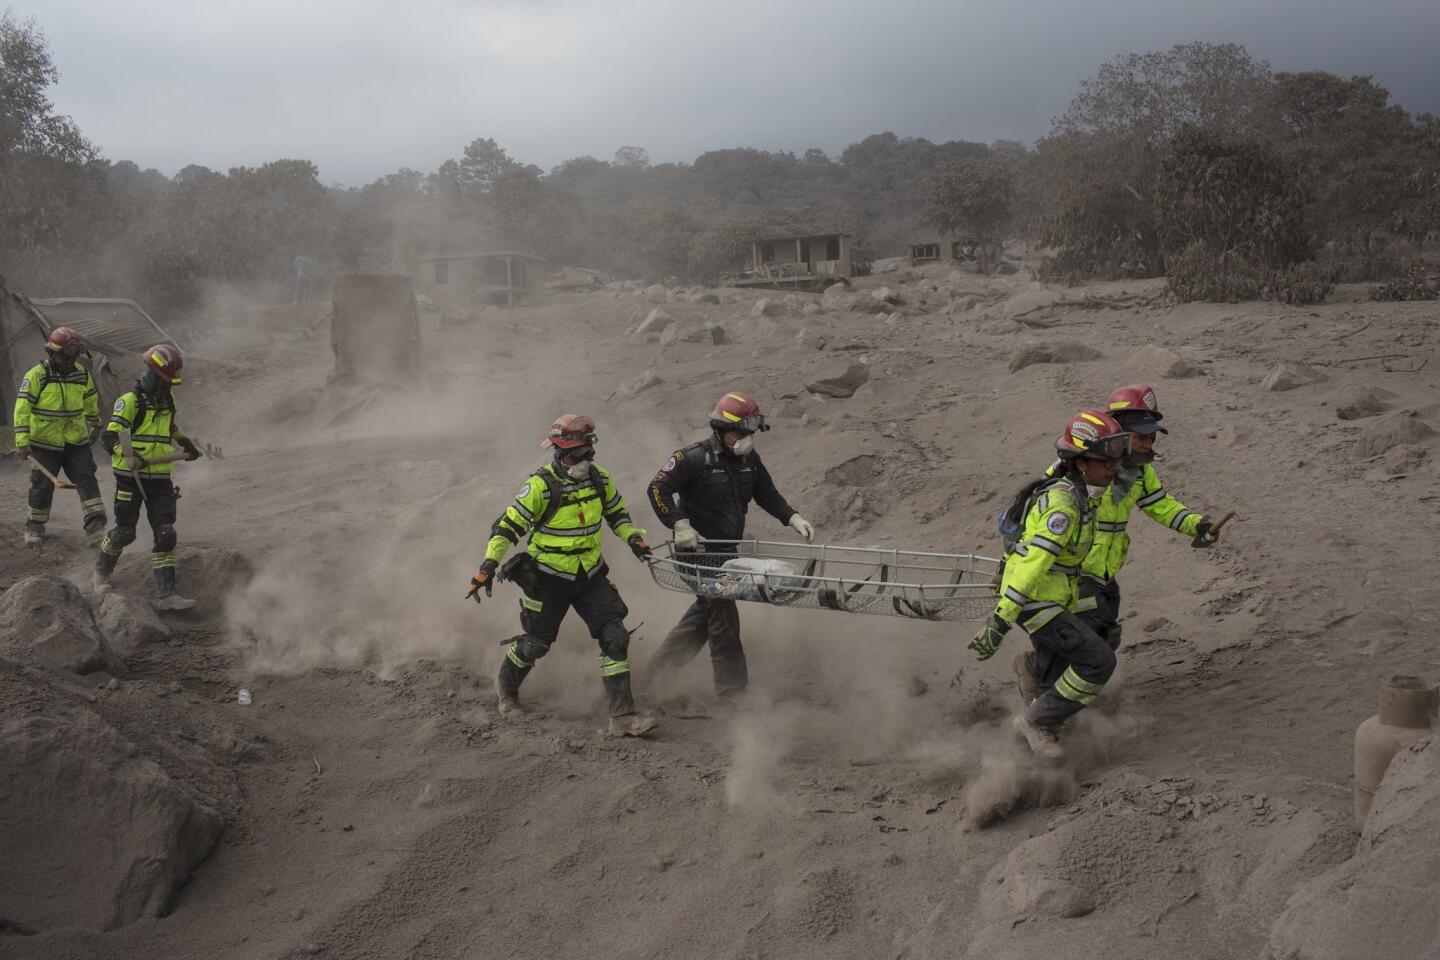 Fuego volcano in Guatemala